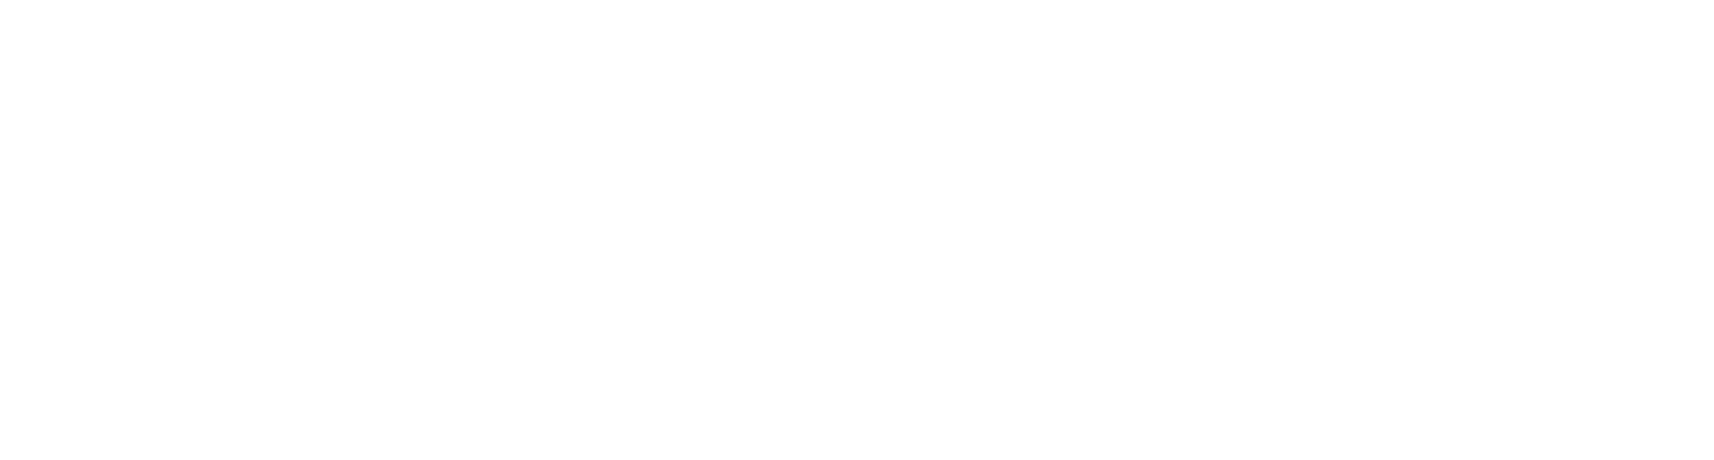 EHECADI_Dev